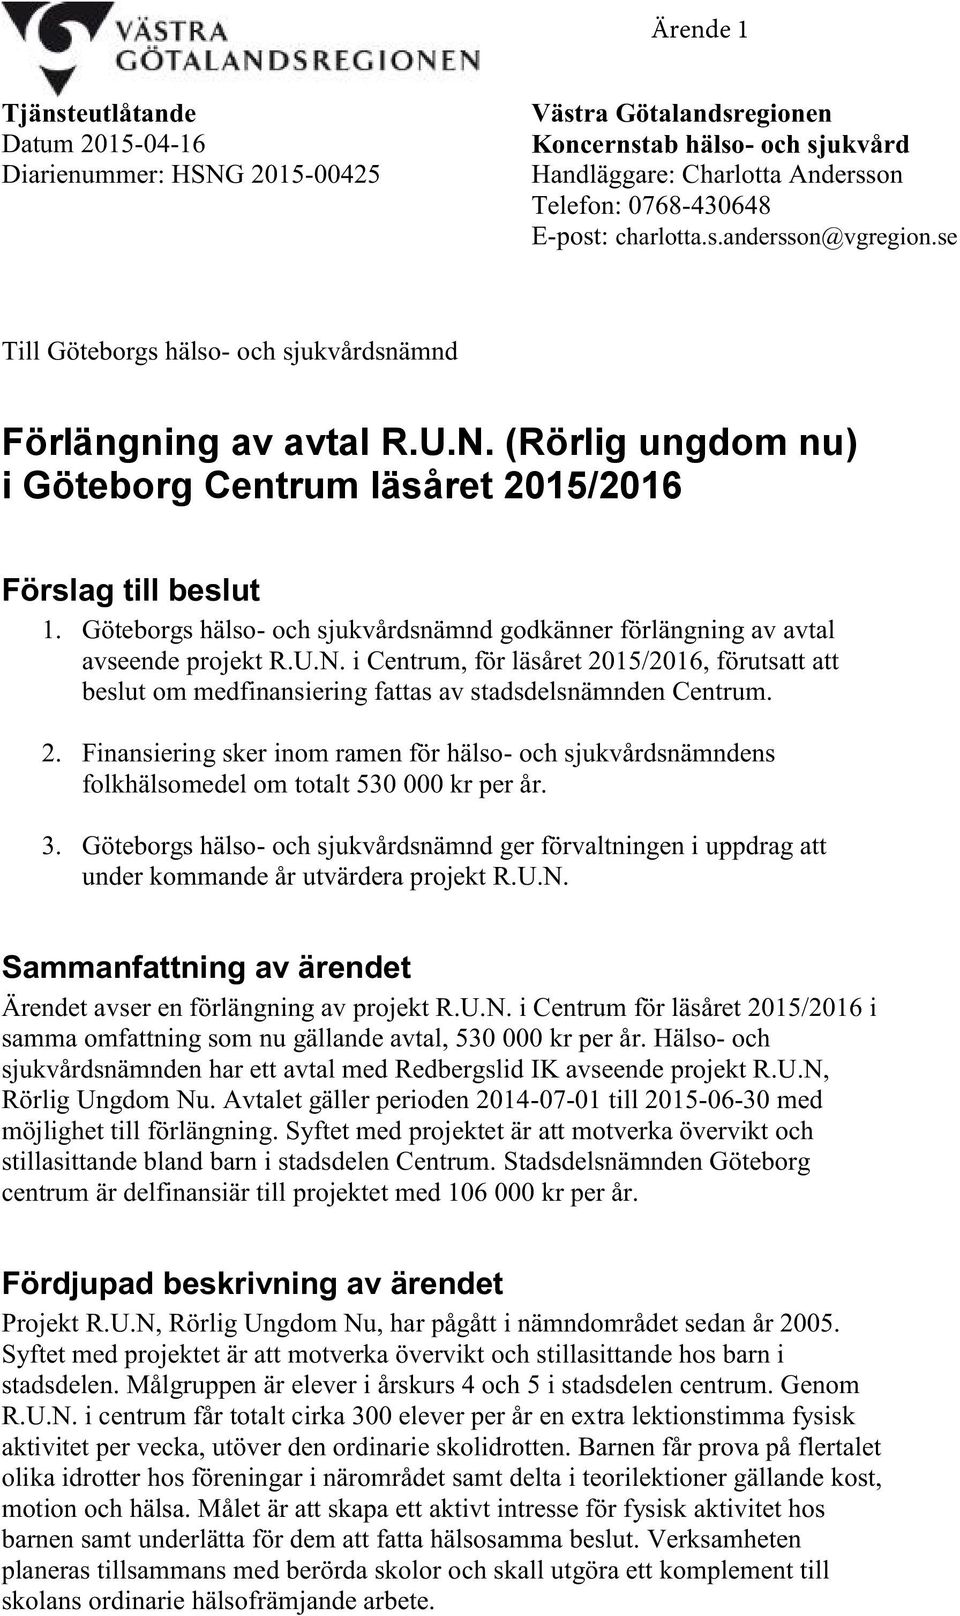 Göteborgs hälso- och sjukvårdsnämnd godkänner förlängning av avtal avseende projekt R.U.N. i Centrum, för läsåret 2015/2016, förutsatt att beslut om medfinansiering fattas av stadsdelsnämnden Centrum.